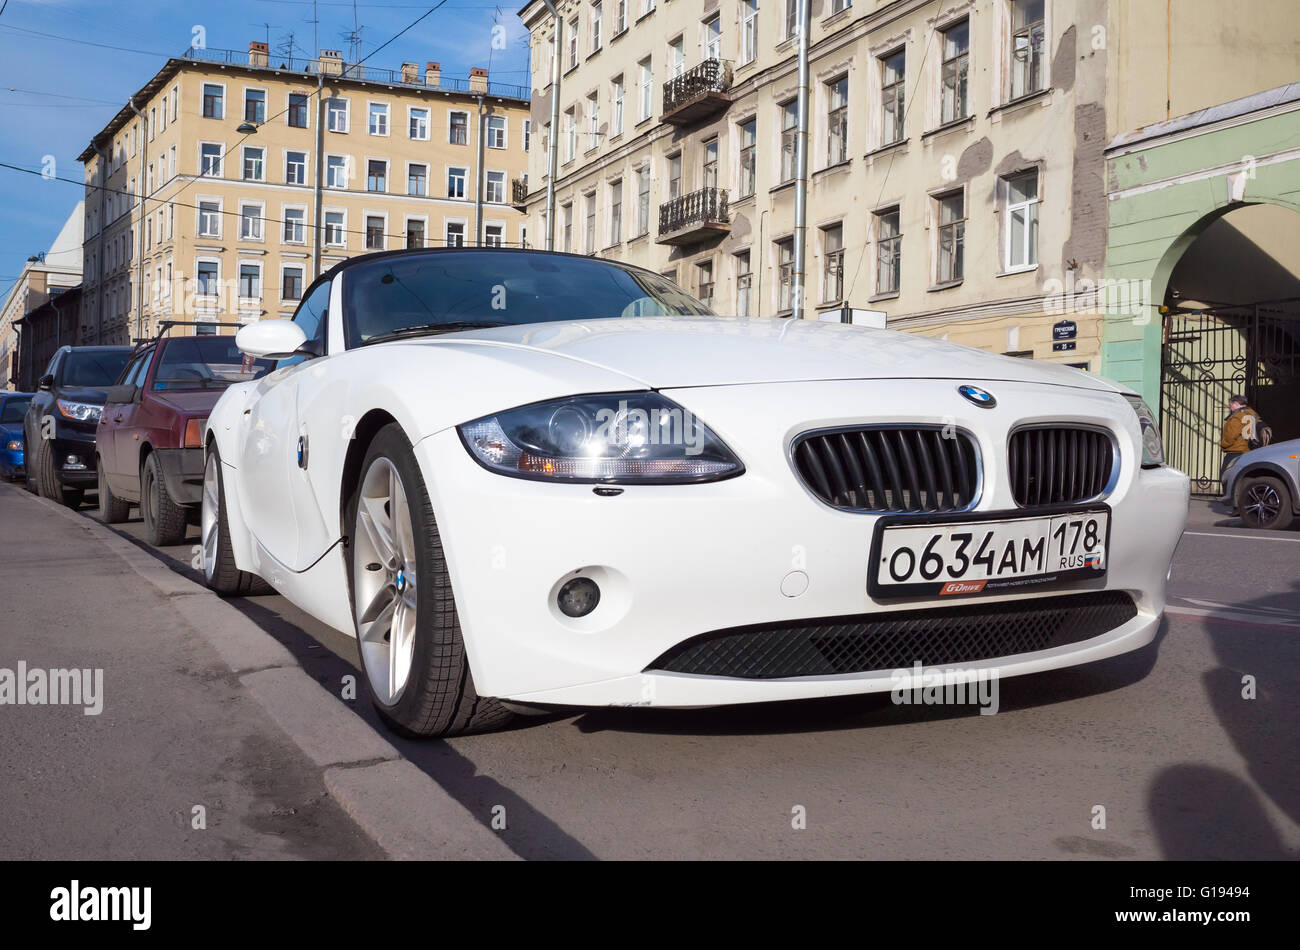 Saint-pétersbourg, Russie - 13 Avril 2016 : Blanc BMW Z4 E85 voiture conçue par l'architecte danois Anders réchauffement climatique. Le roadster est park Banque D'Images